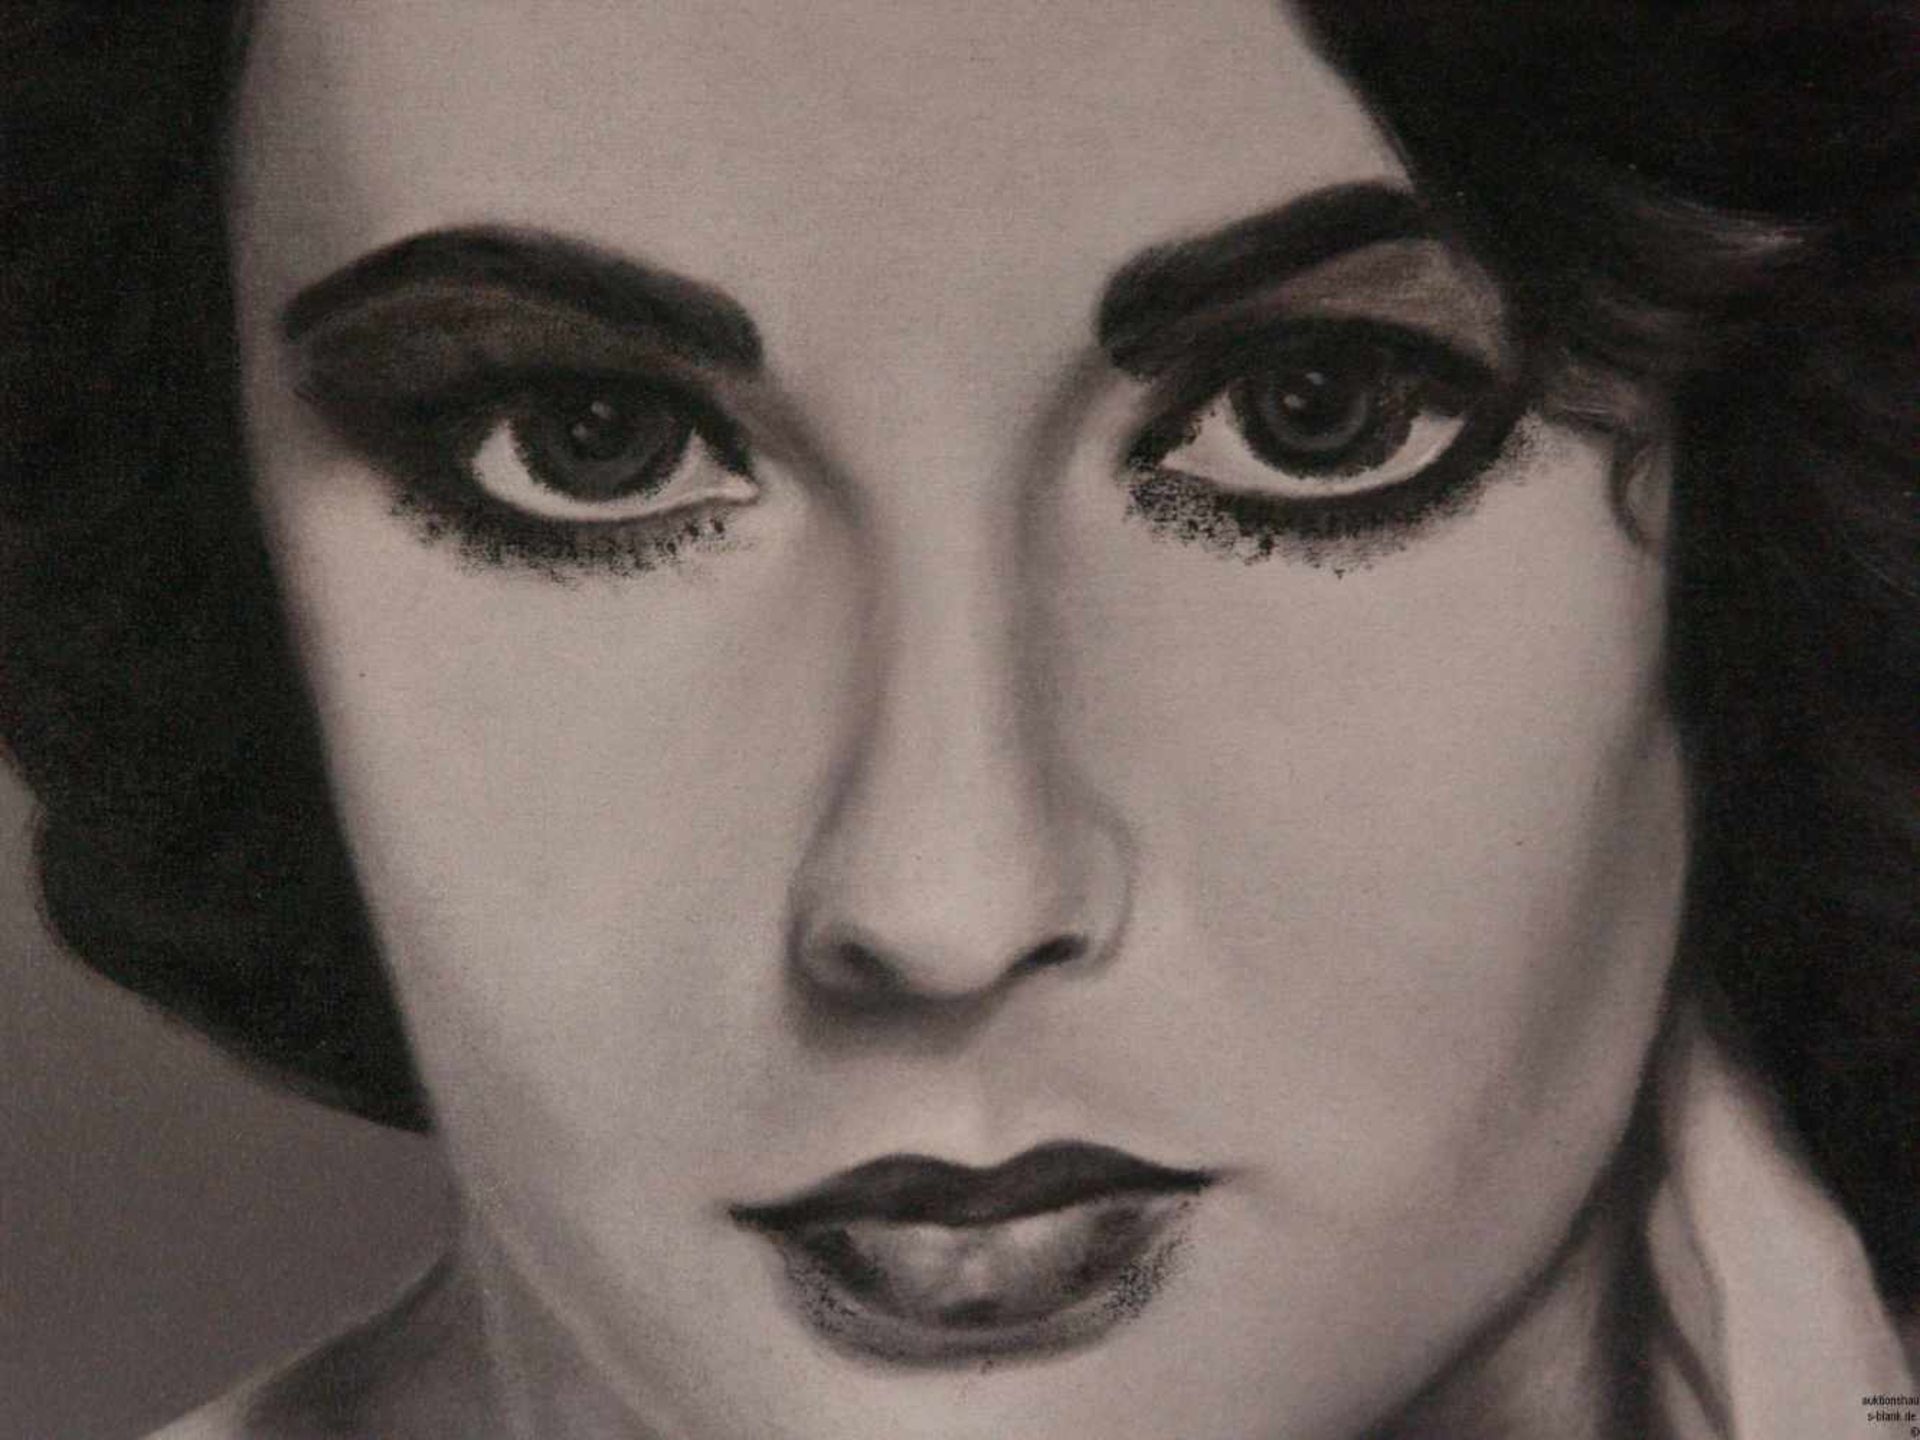 Unbekannt - "Liz Taylor", Öl auf Leinwand, schwarz/weißes Porträt der Schauspielerin Elizabeth - Bild 3 aus 7